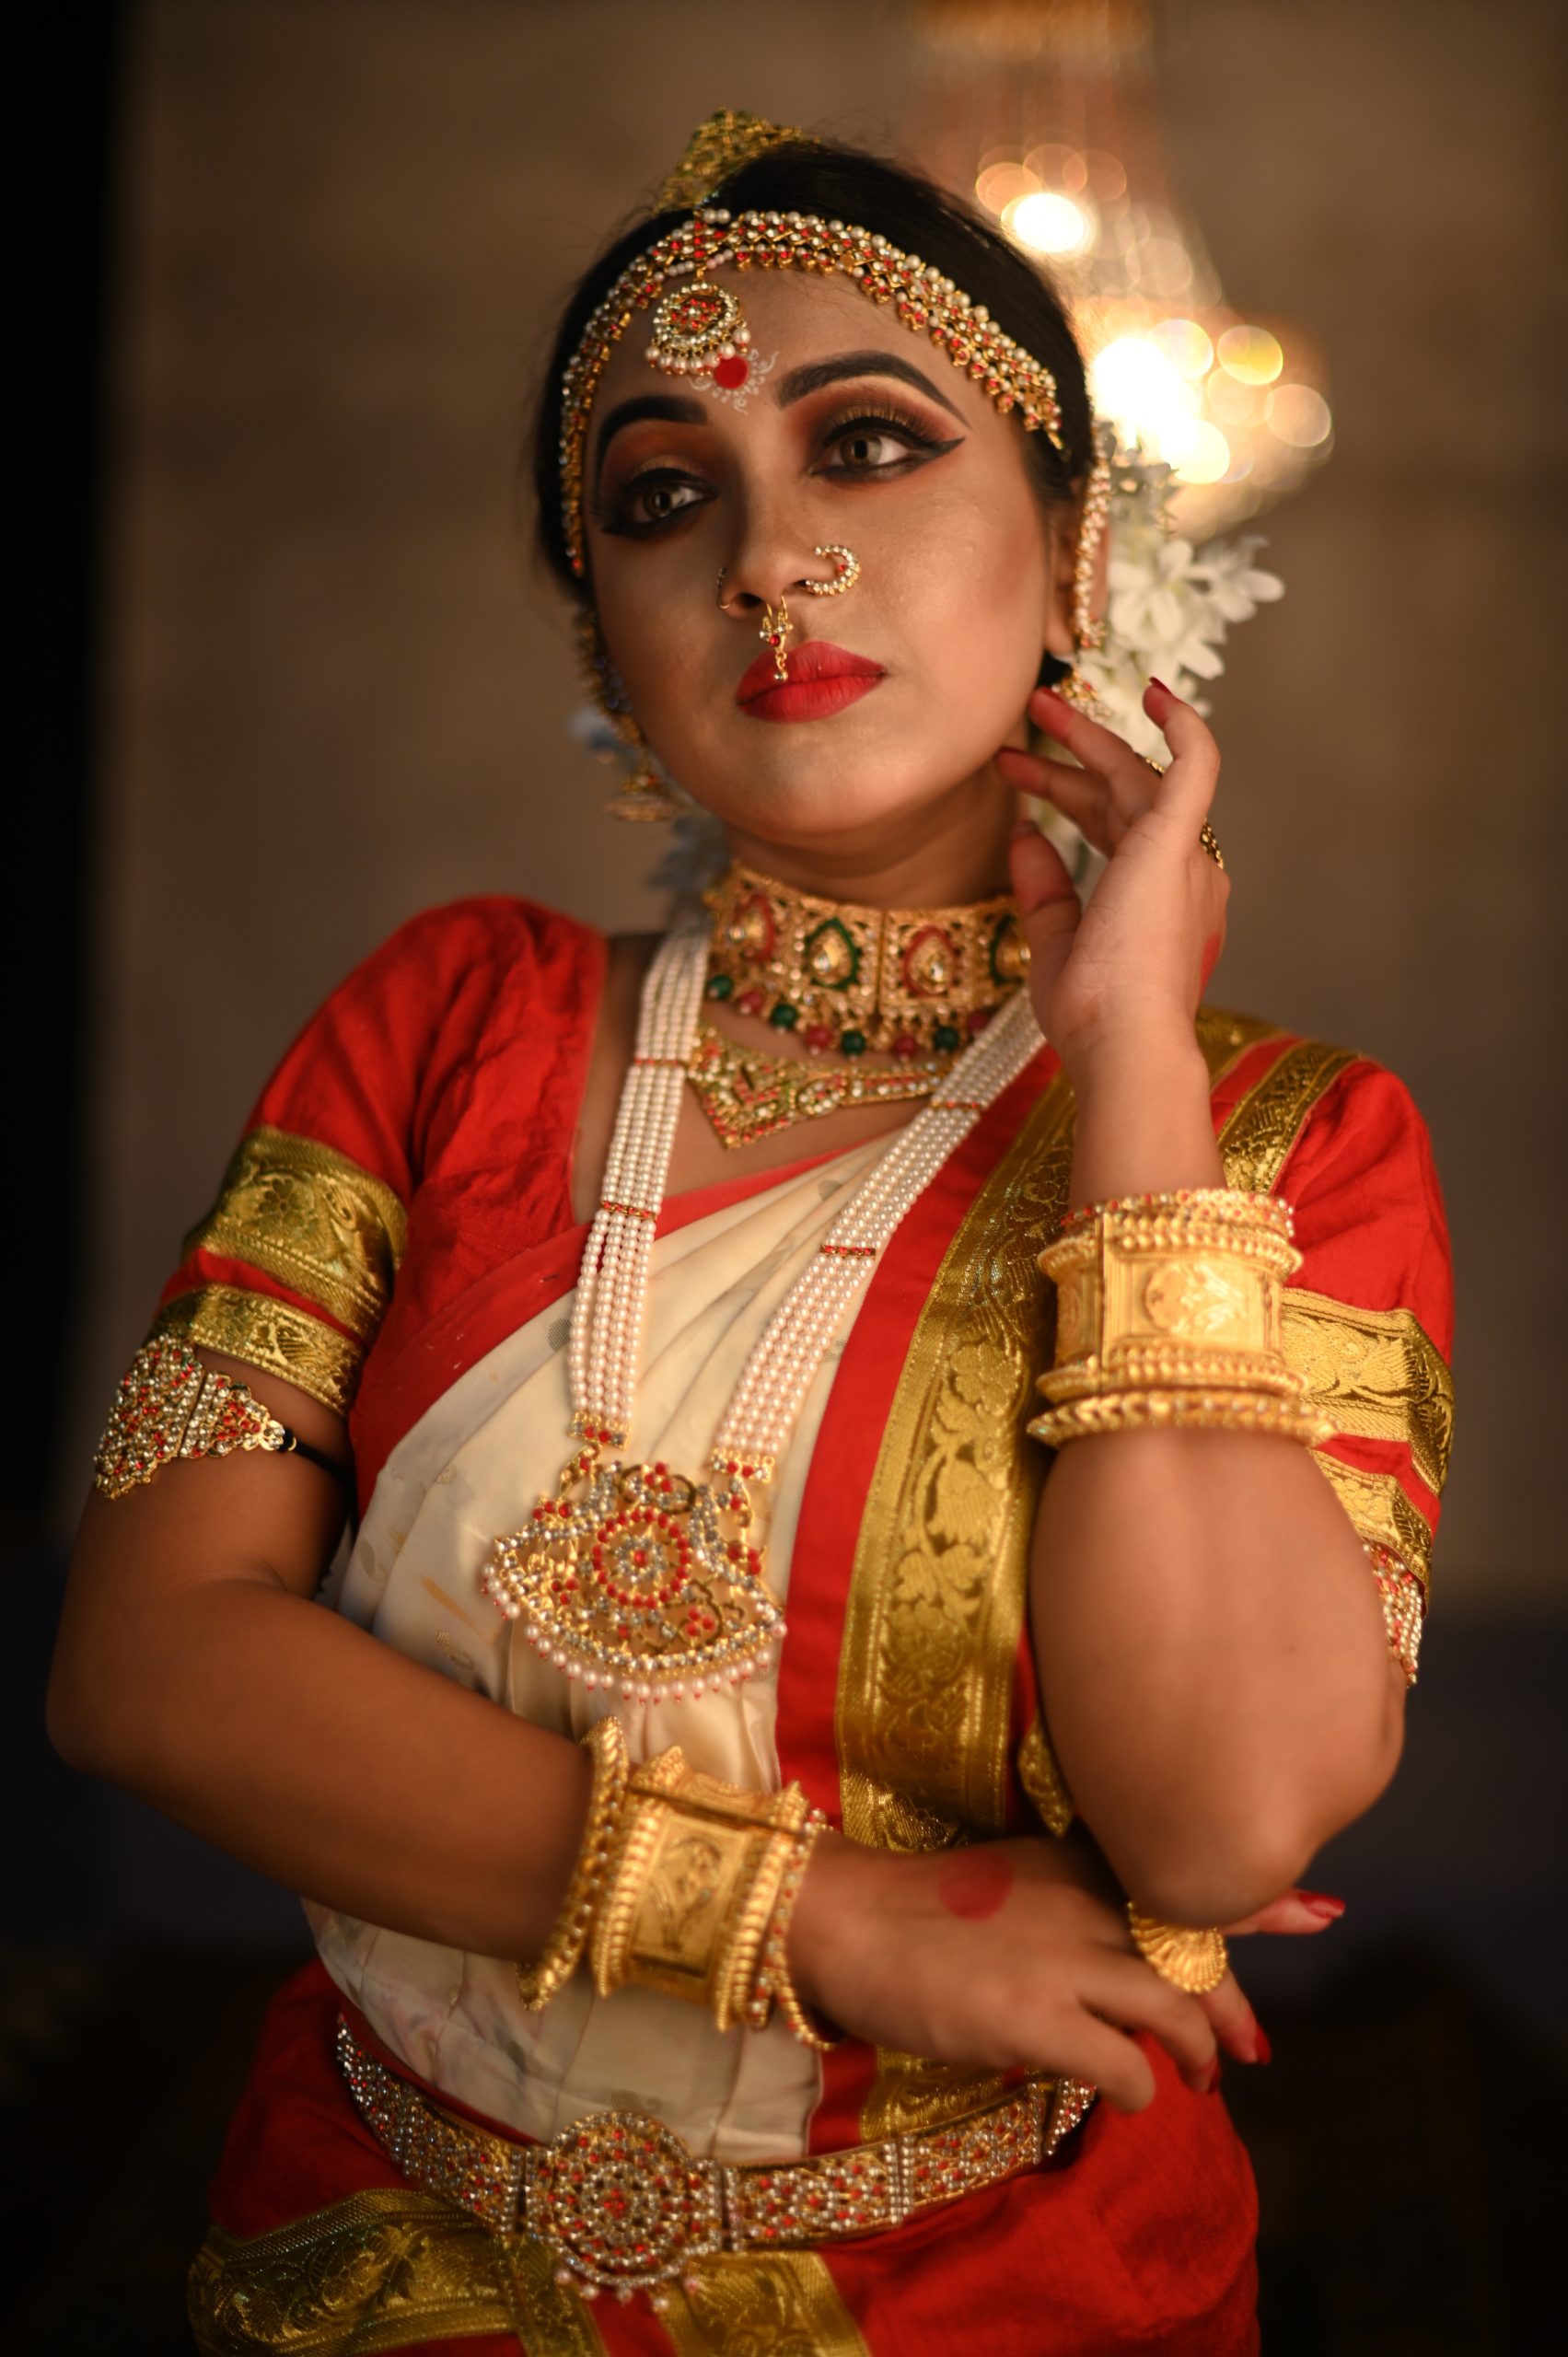 A female classical dancer